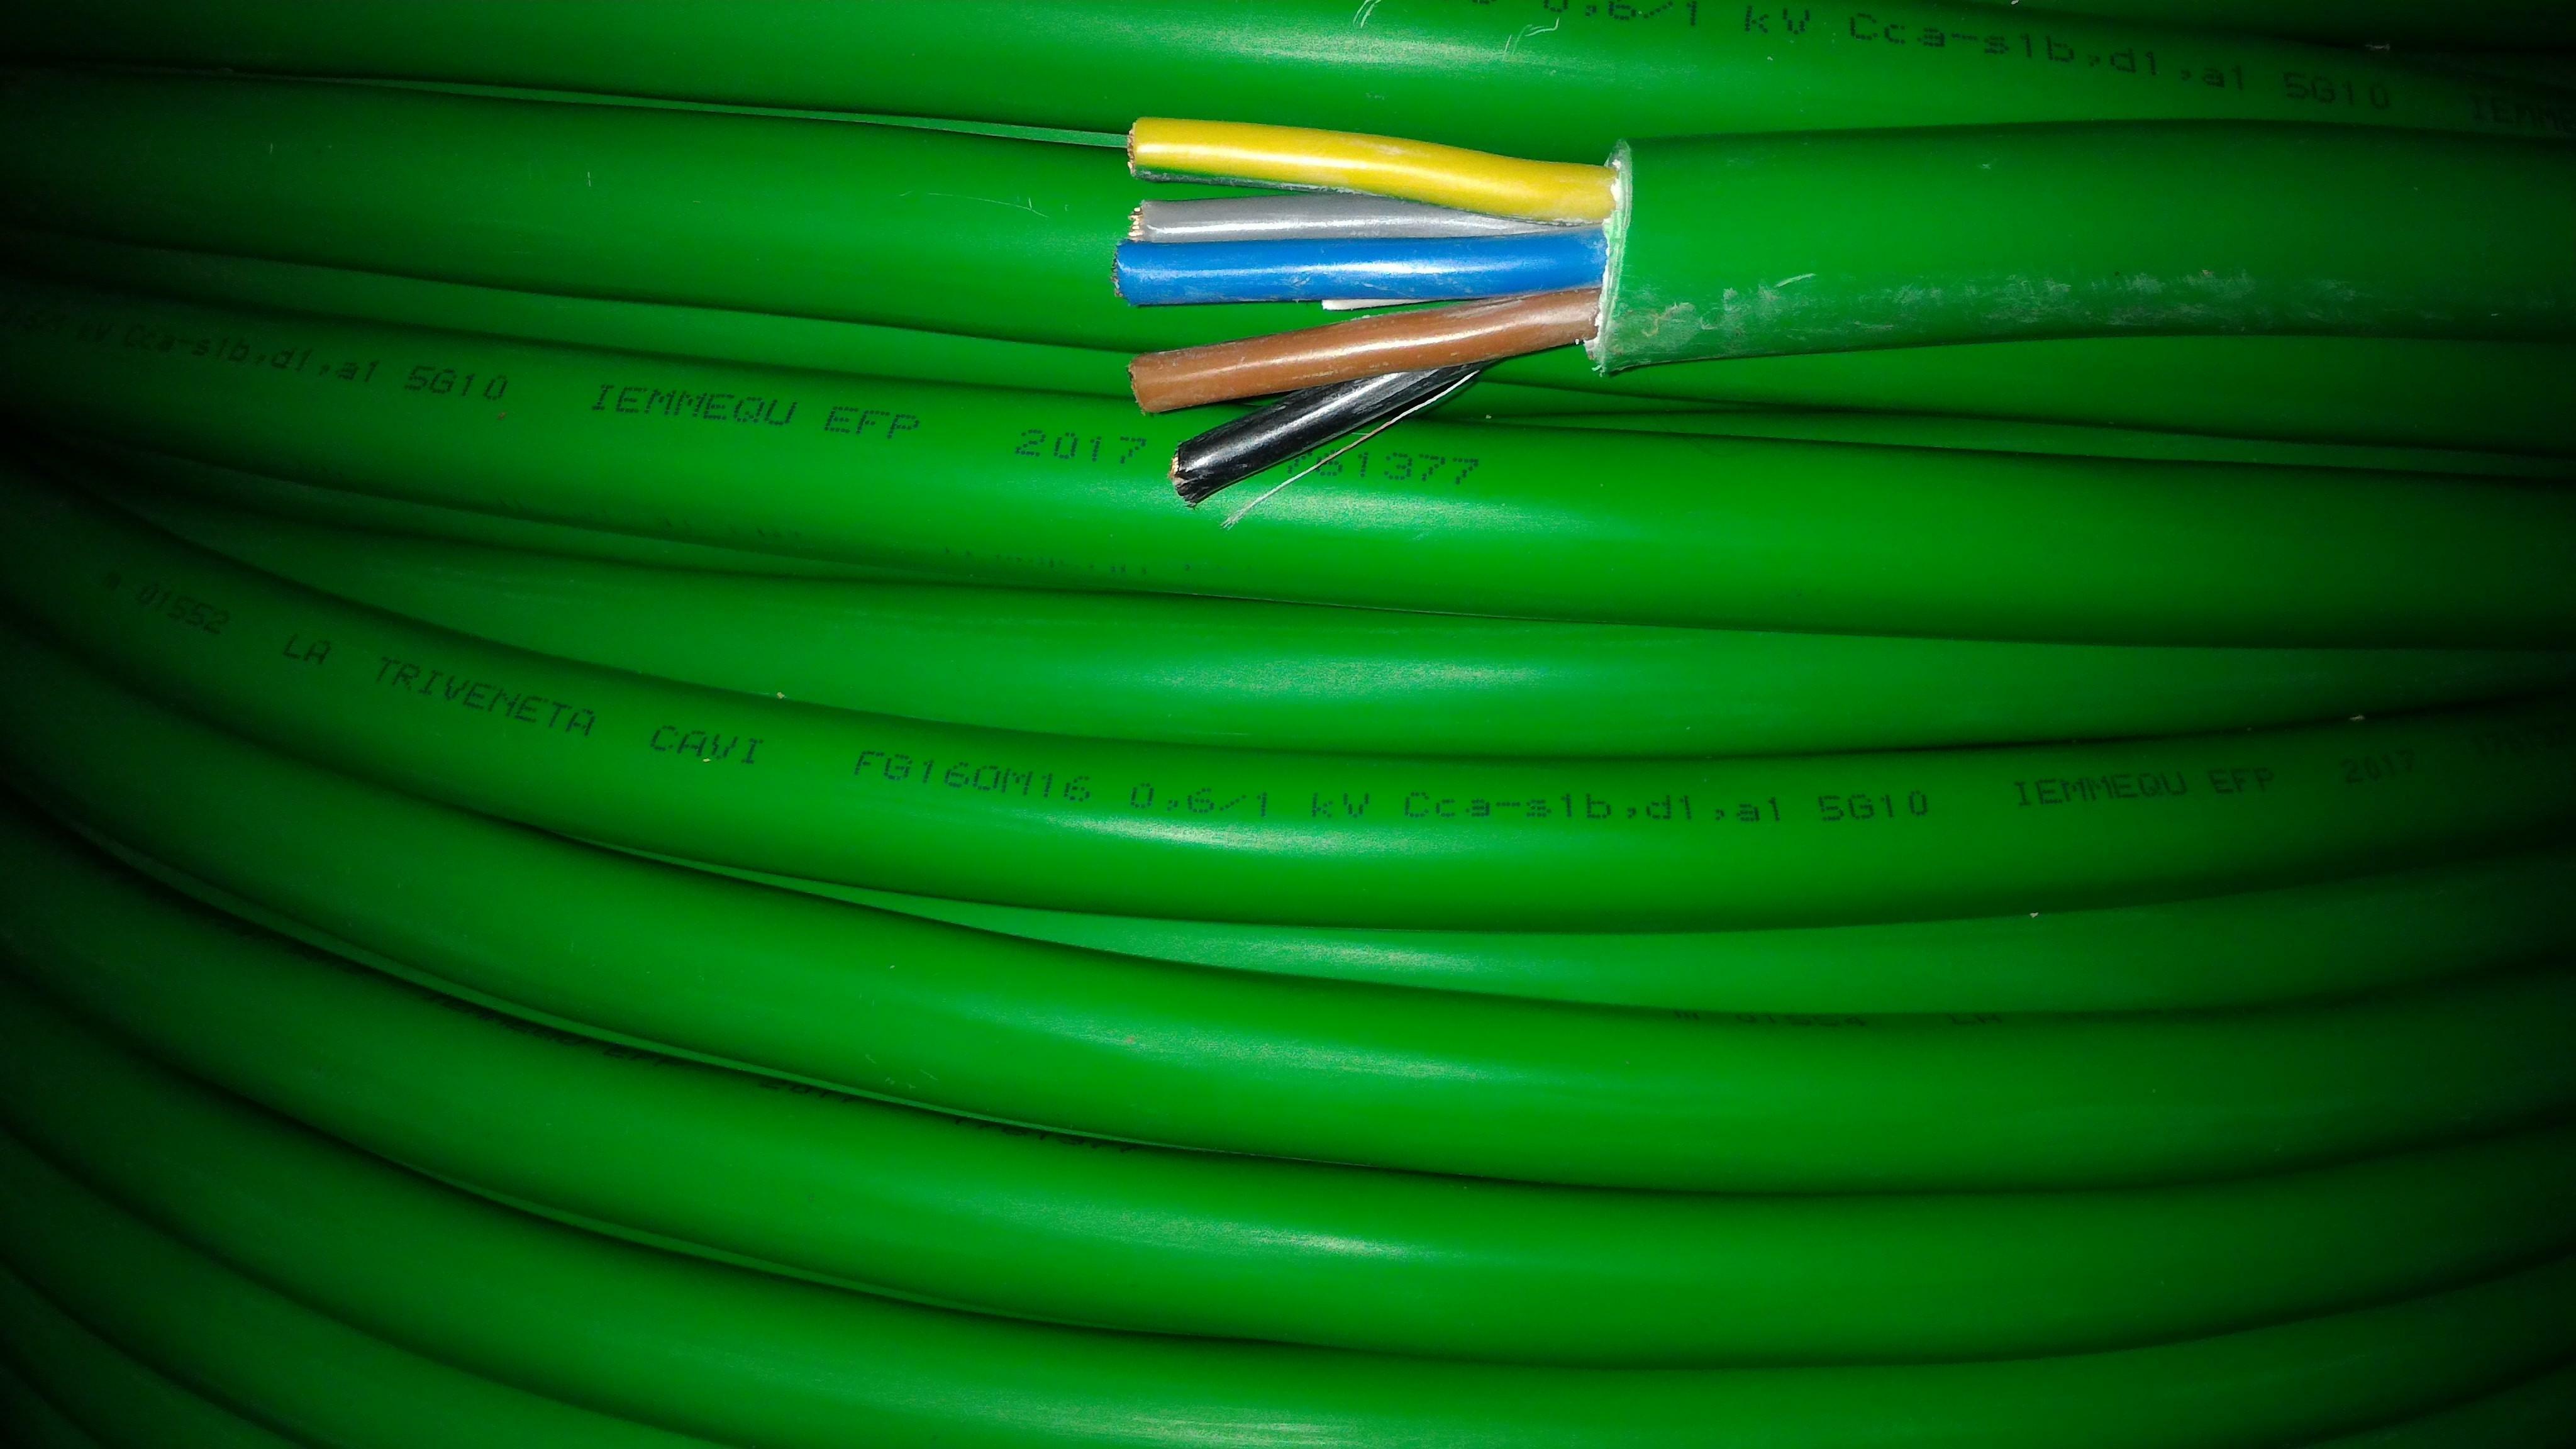 cavi cavi al metro cavo fg16om16 multipolare fg16 verde 5 conduttori da 10mmq con giallo verde fg7om1-5gx10 fg16om16-5gx10